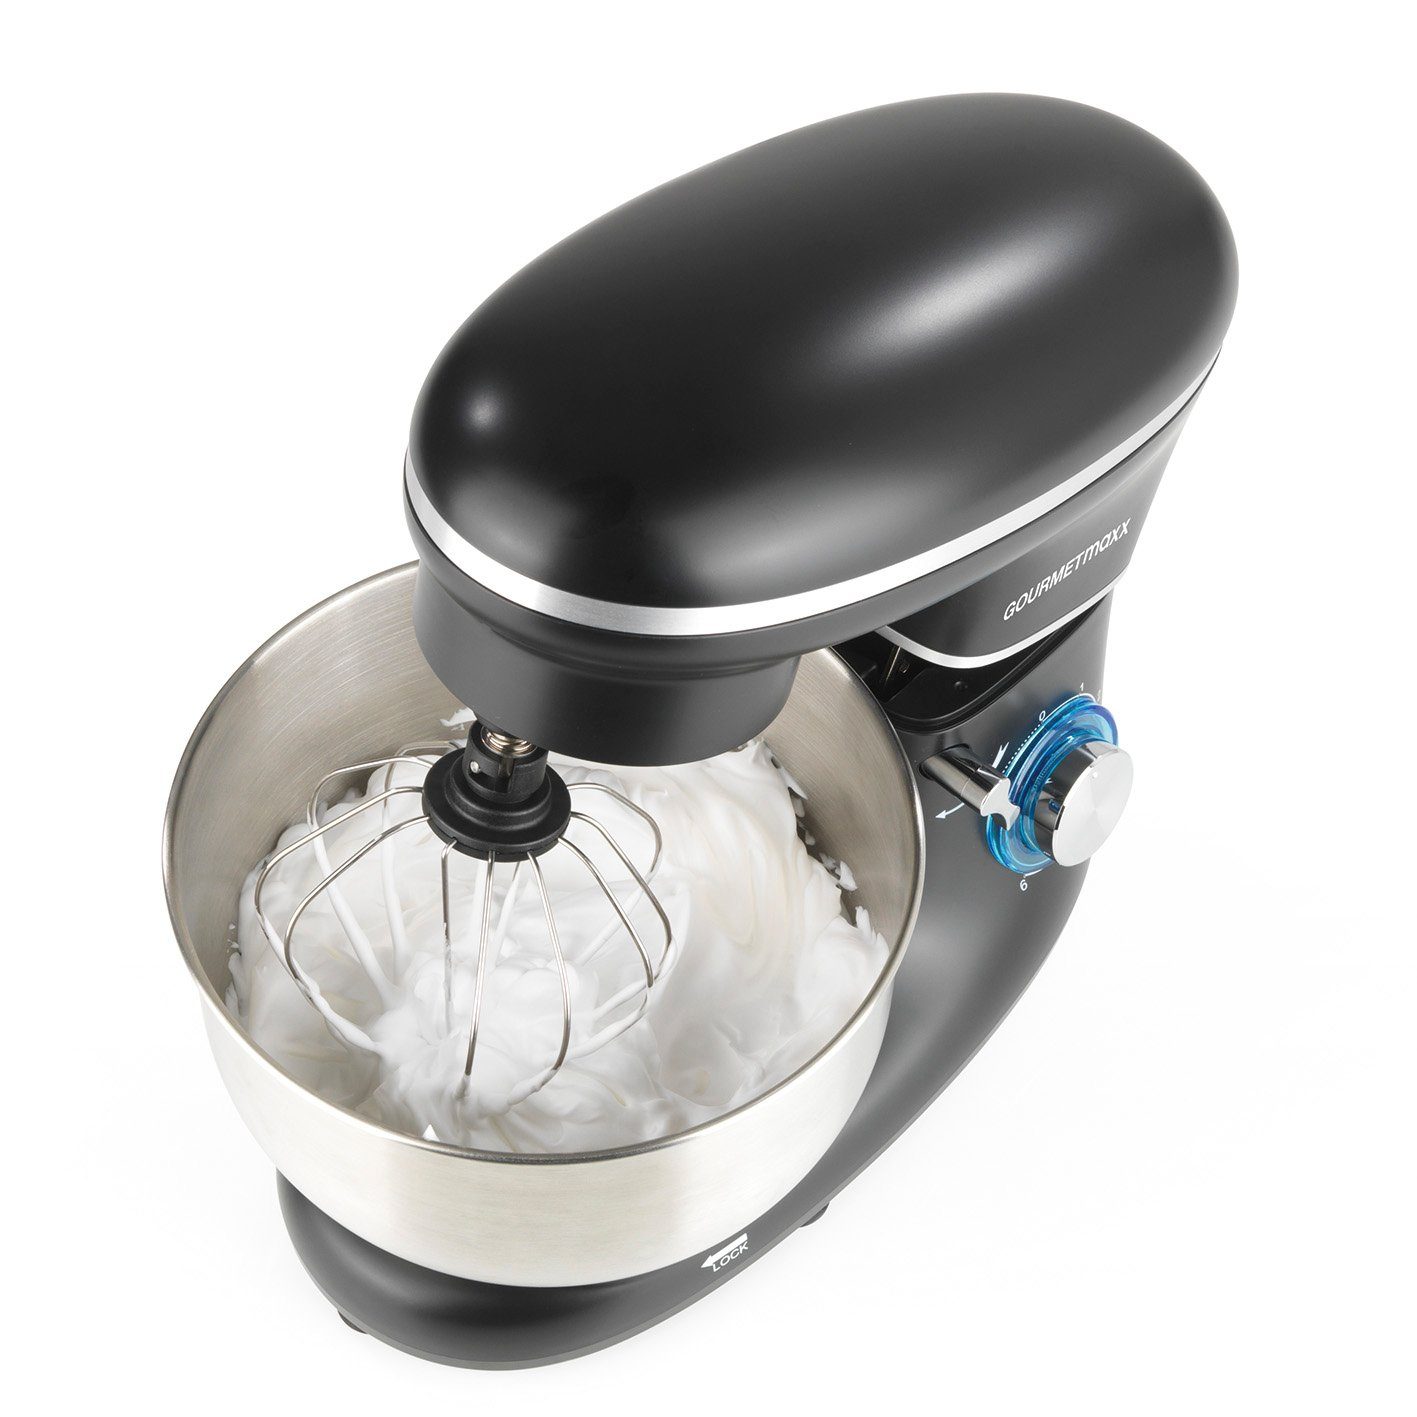 Rührgerät GOURMETmaxx Küchenmaschine 6 Geschwindigkeitsstufen Schwarz Teigmixer, -